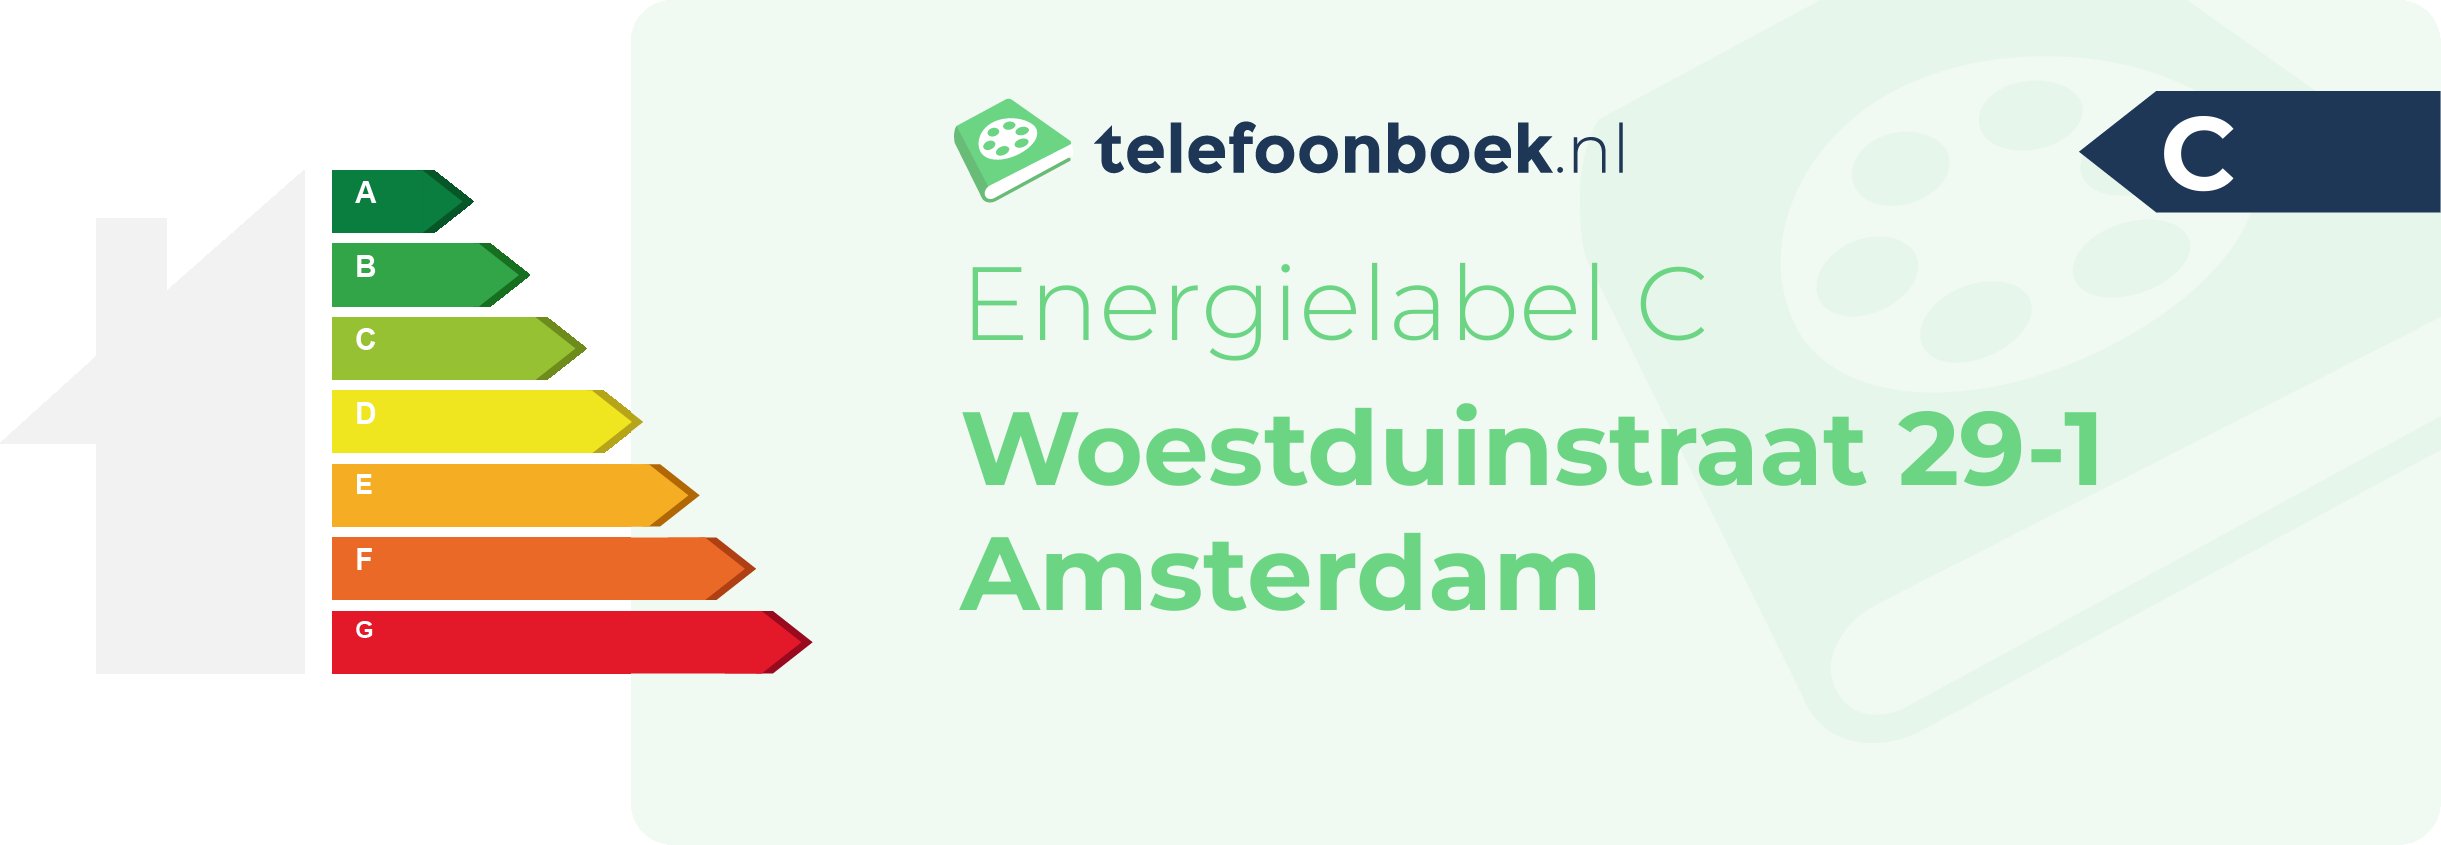 Energielabel Woestduinstraat 29-1 Amsterdam